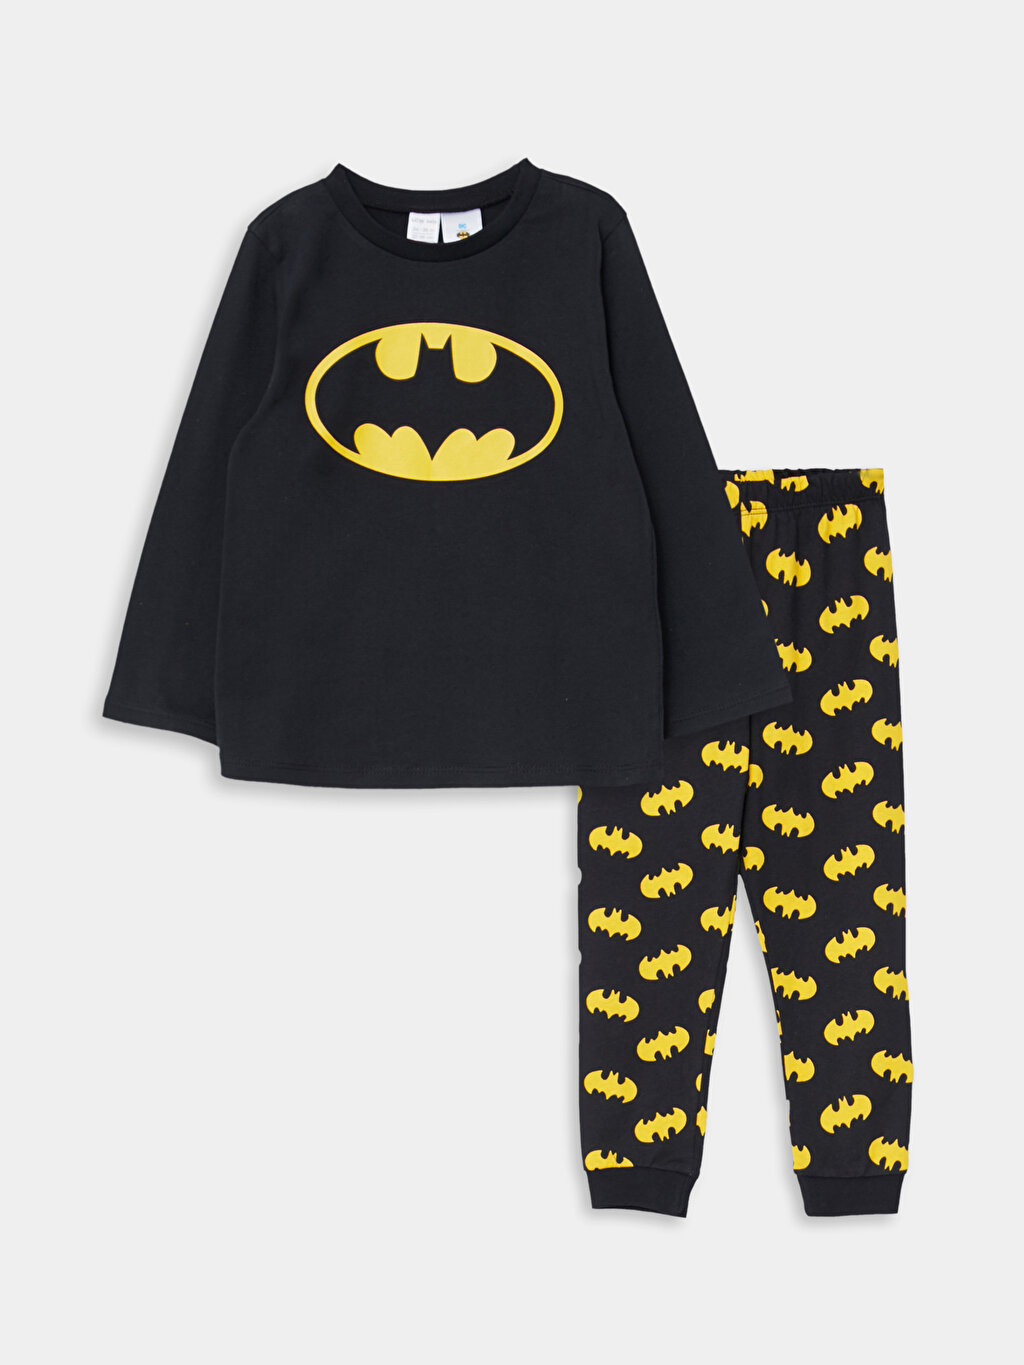 Crew Neck Long Sleeve Batman Printed Baby Boy Pajamas Set -W27907Z1-RQN -  W27907Z1-RQN - LC Waikiki